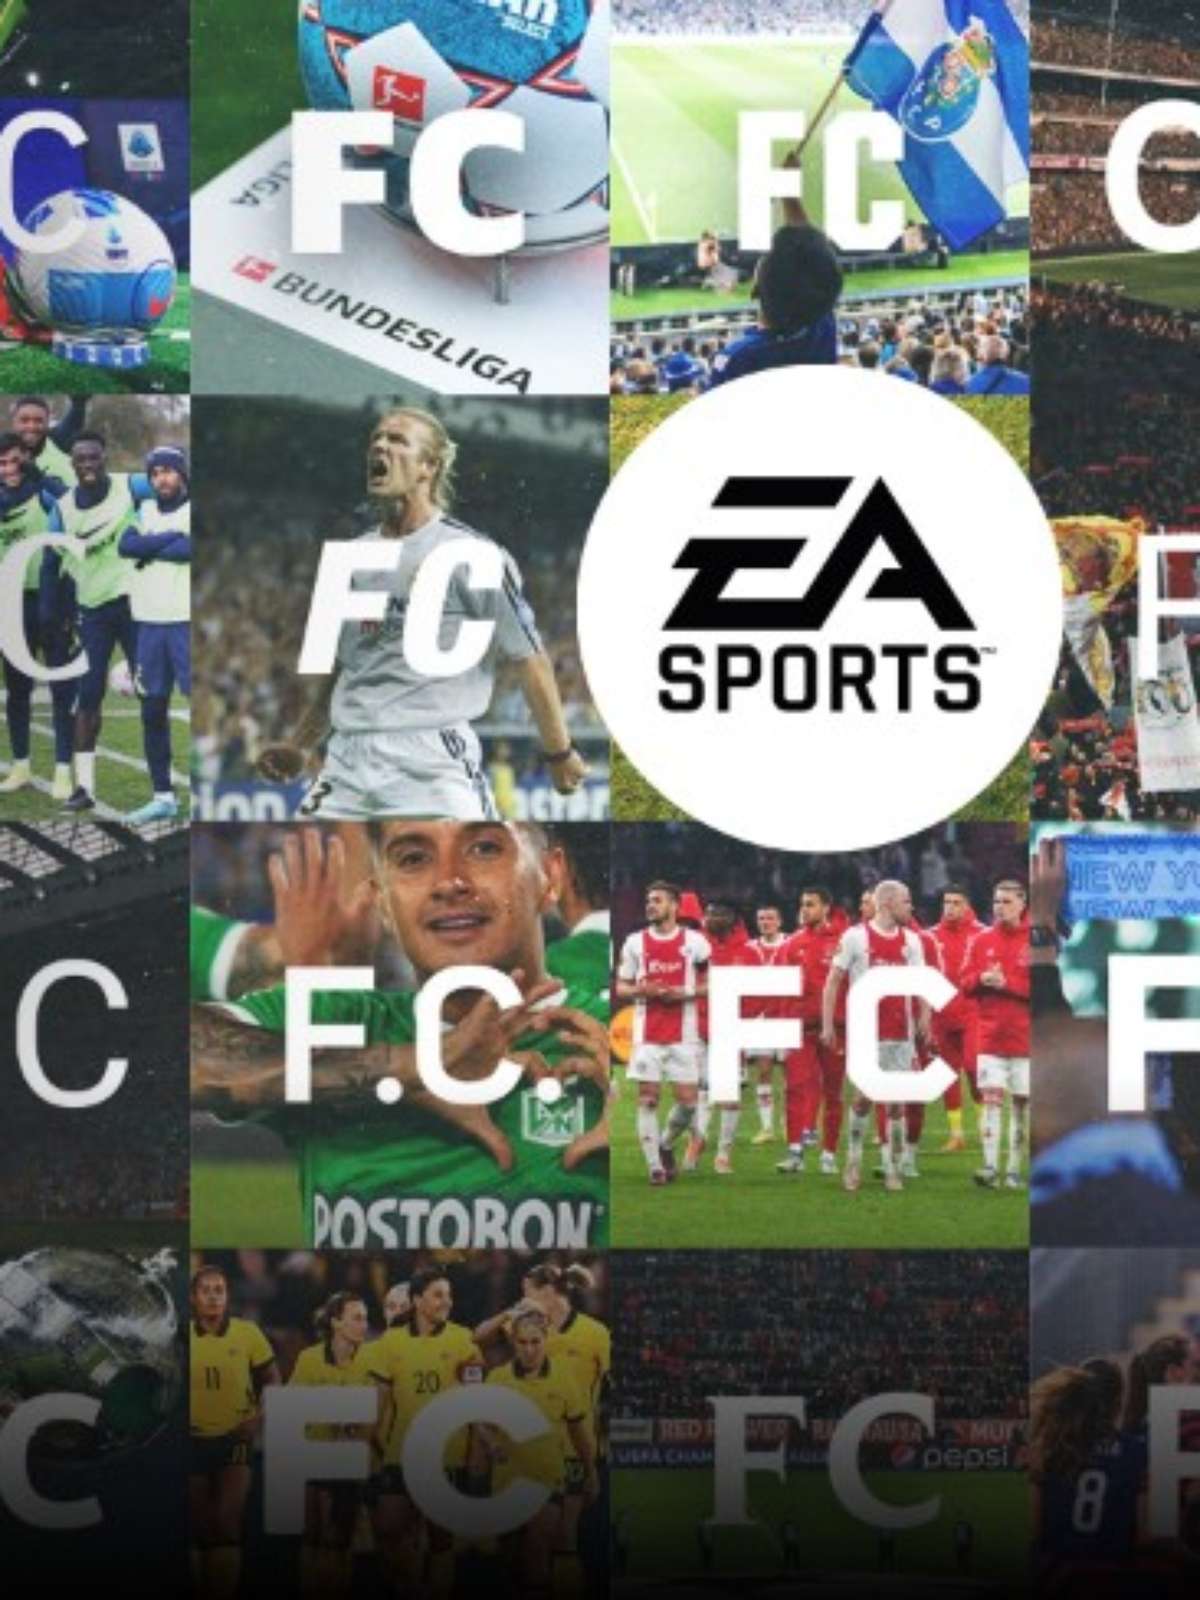 Tchau FIFA! Logotipo e detalhes da EA Sports FC revelados para o